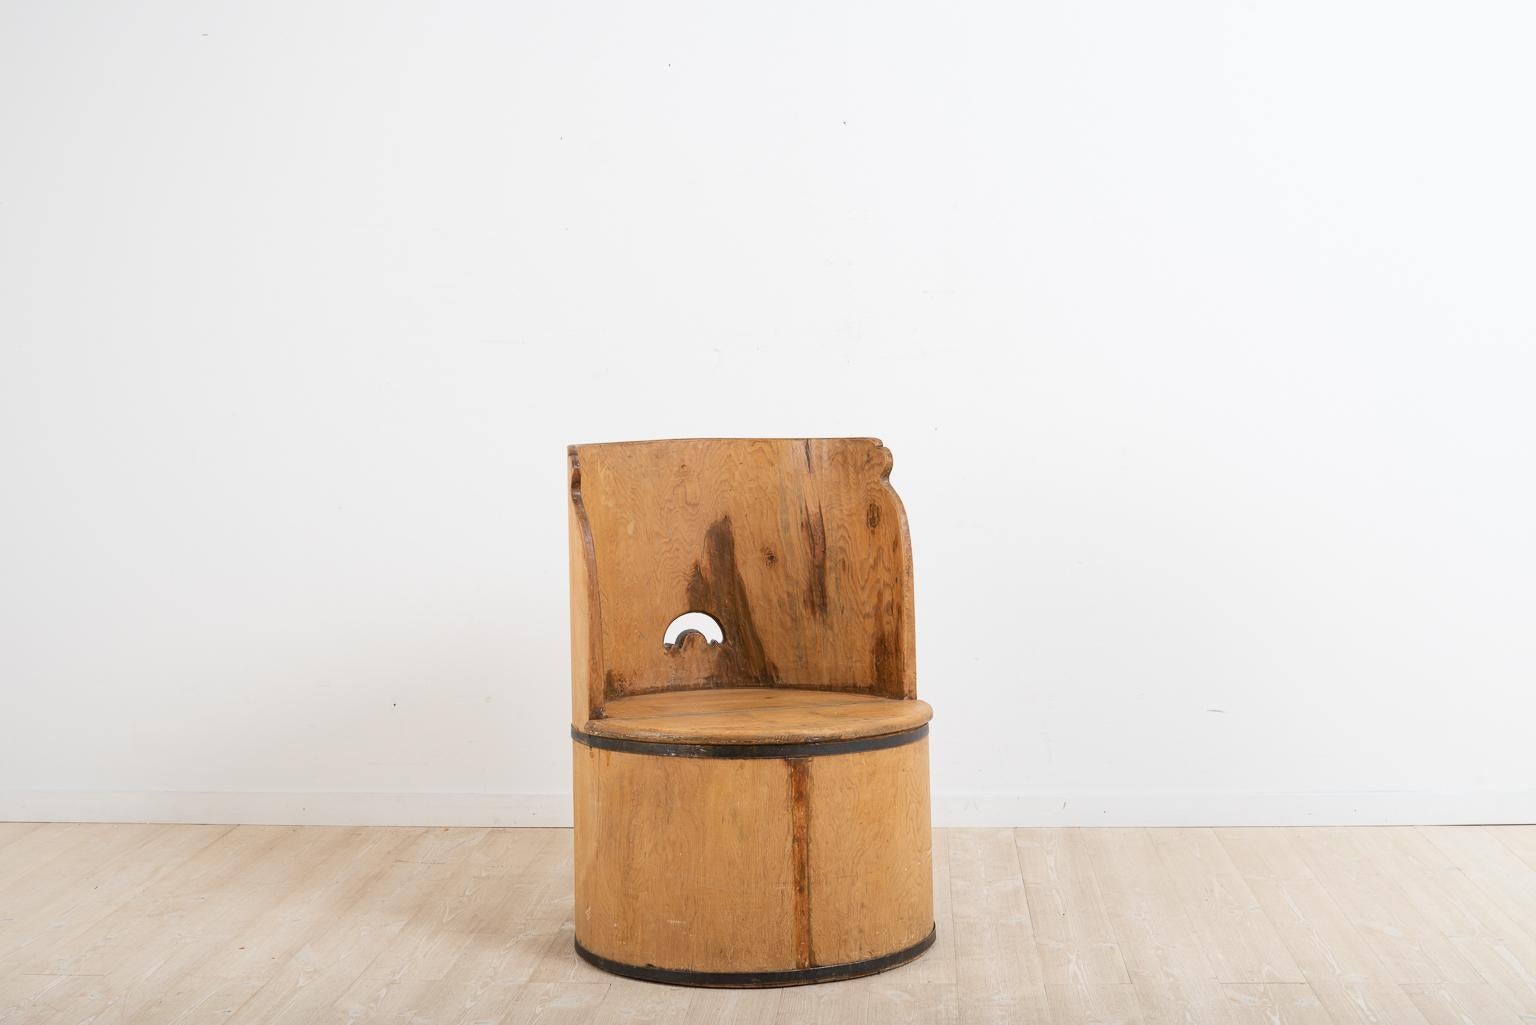 Schwedischer Baumstumpfstuhl, hergestellt aus einem ausgehöhlten Baumstamm. Der Stuhl ist primitiv und wurde nie gestrichen. Die beiden Bänder, die den Sitz umgeben, sind handgeschmiedet und dienen der Verstärkung der Konstruktion sowie als